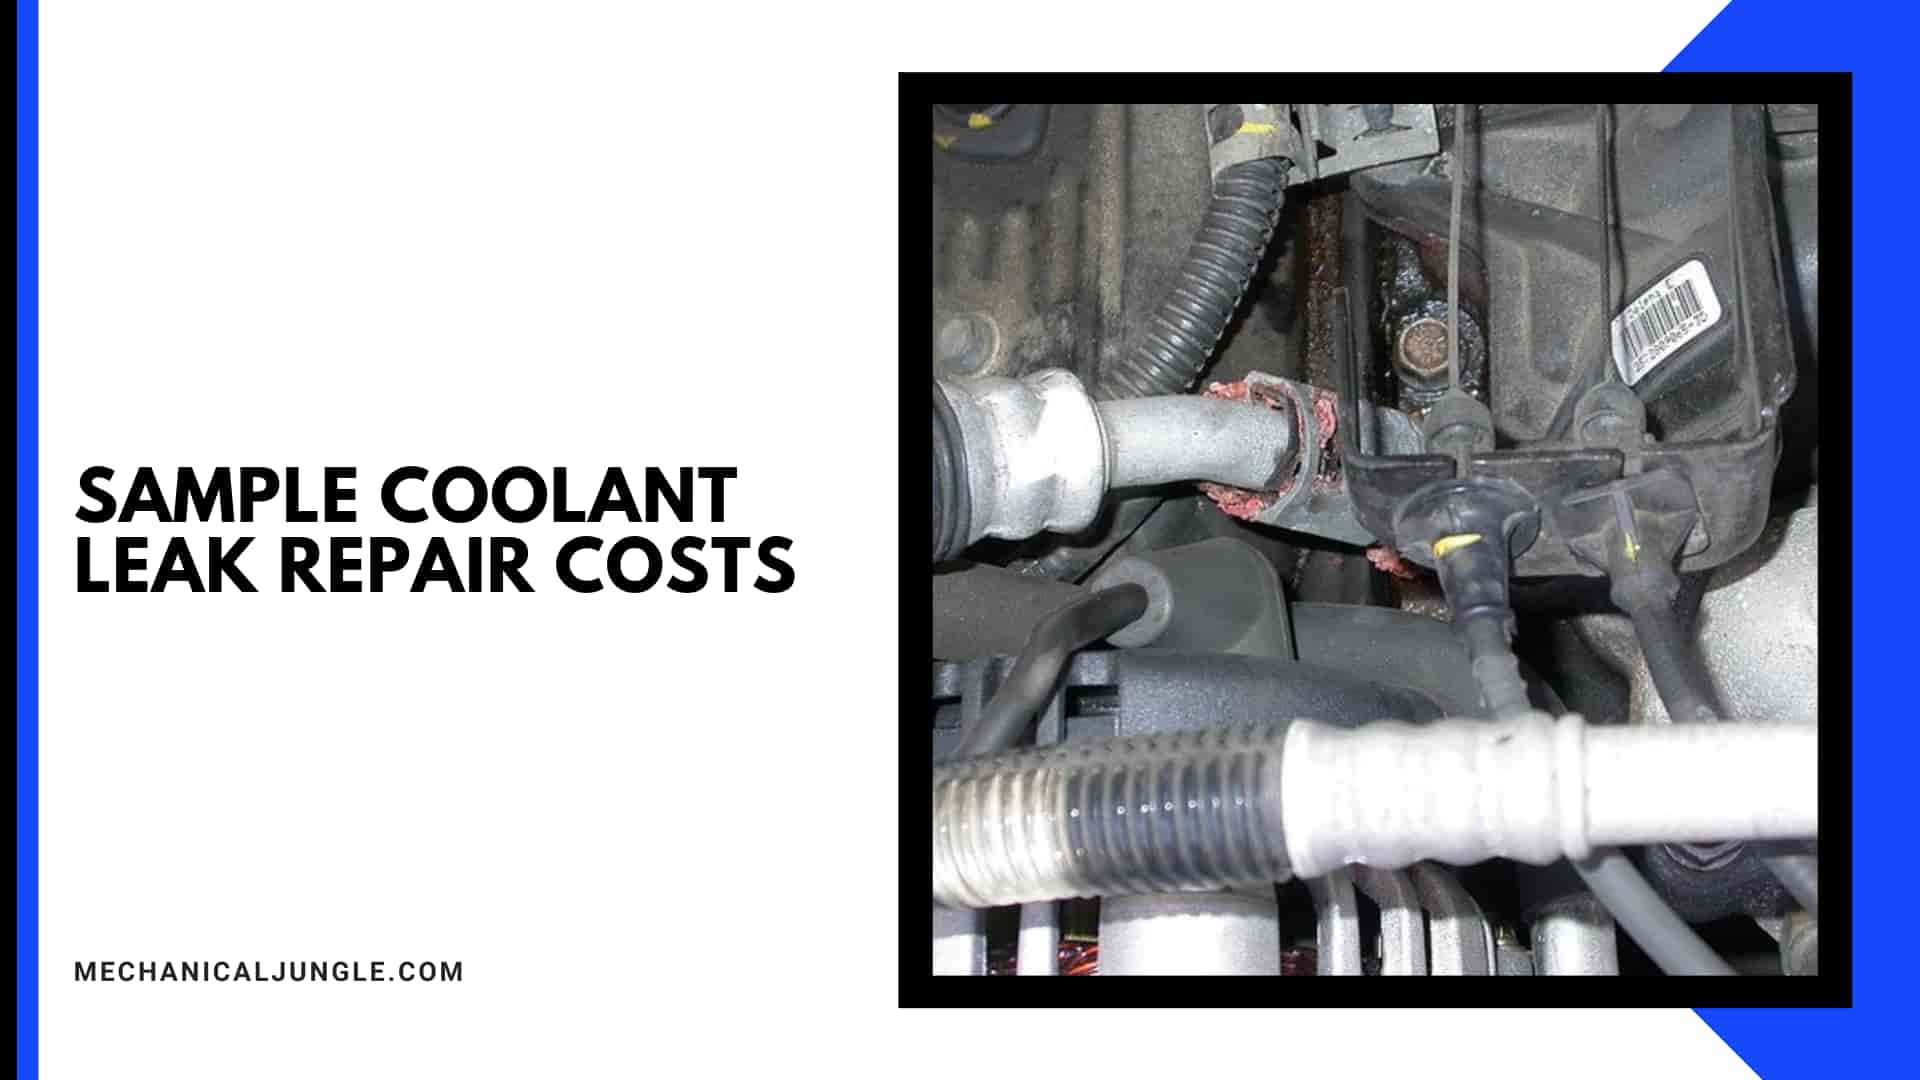 Sample Coolant Leak Repair Costs